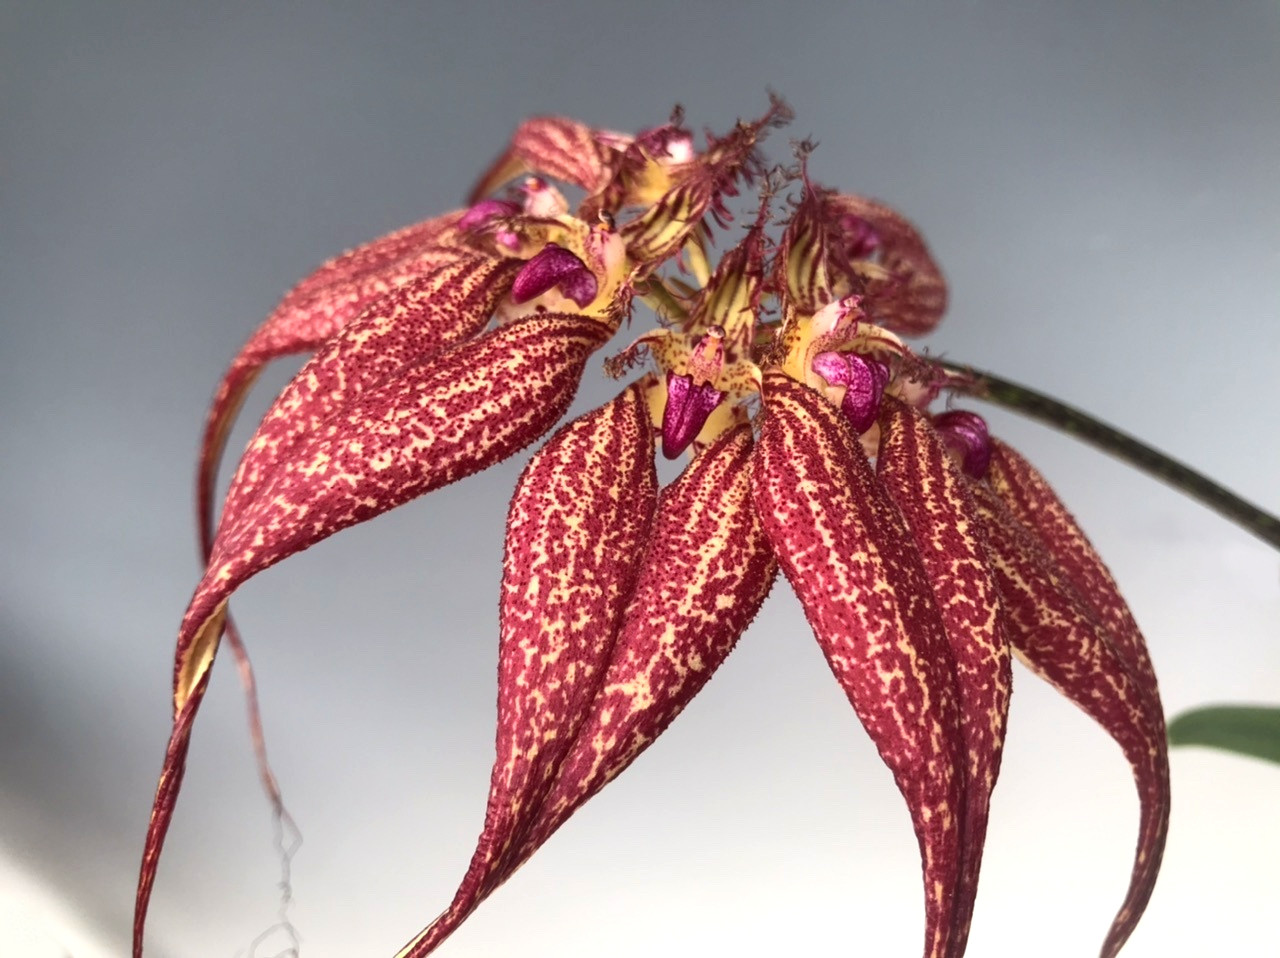 Bulbophyllum rothschildianum 'Red Chimney' FCC/AOS (syn. Cirrhopetalum rothschildianum)